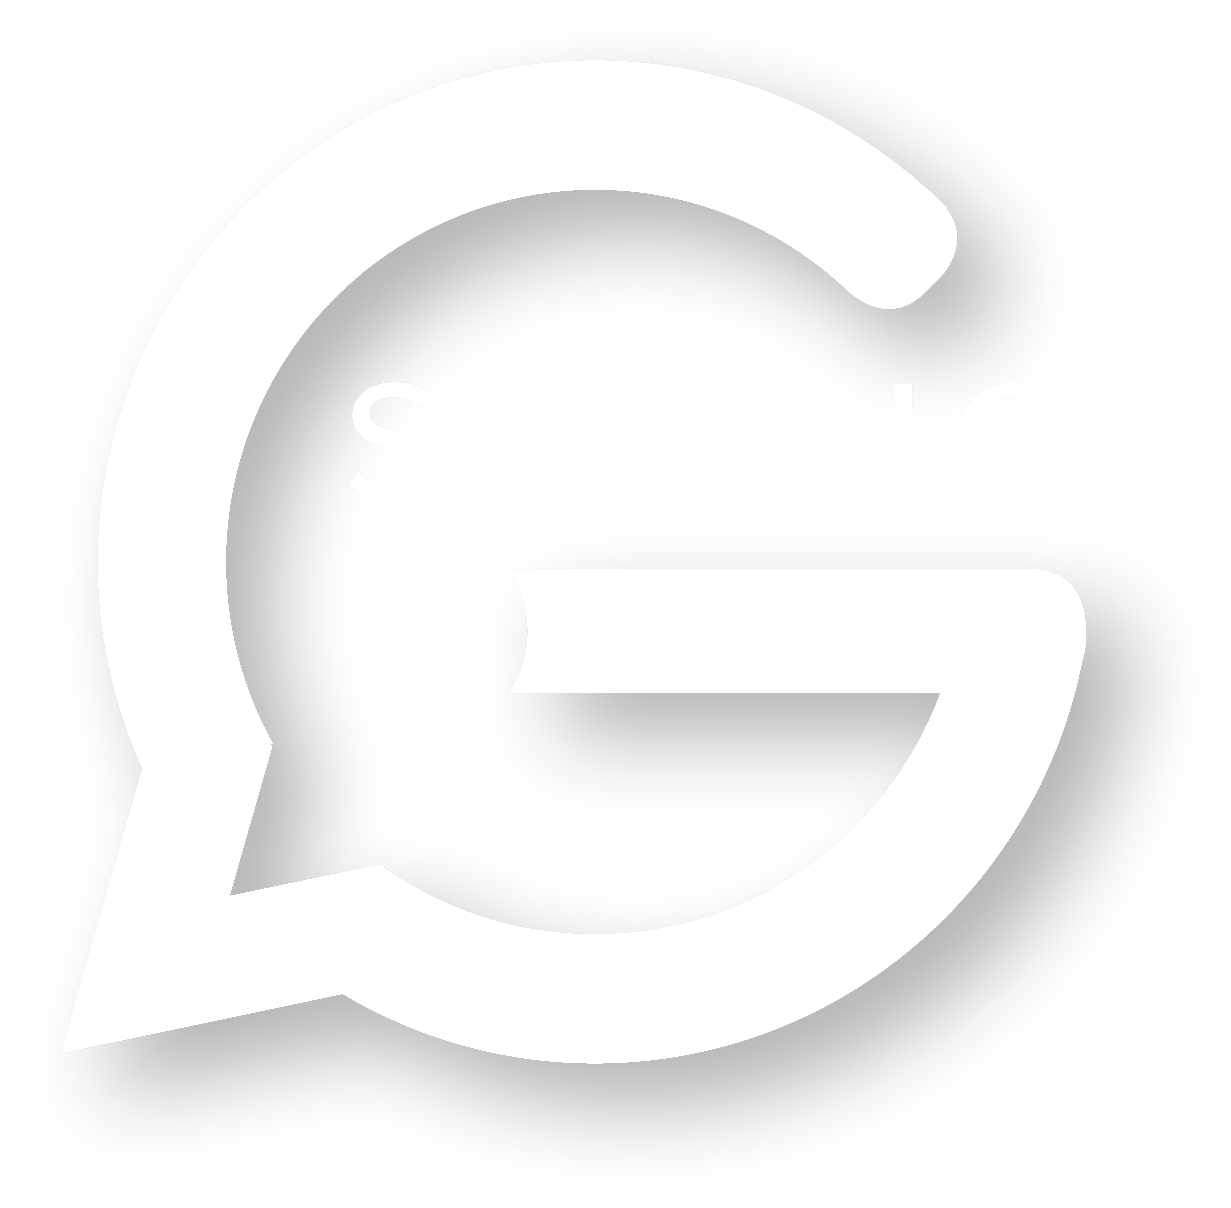 G_Suite_logo_Sales_Page